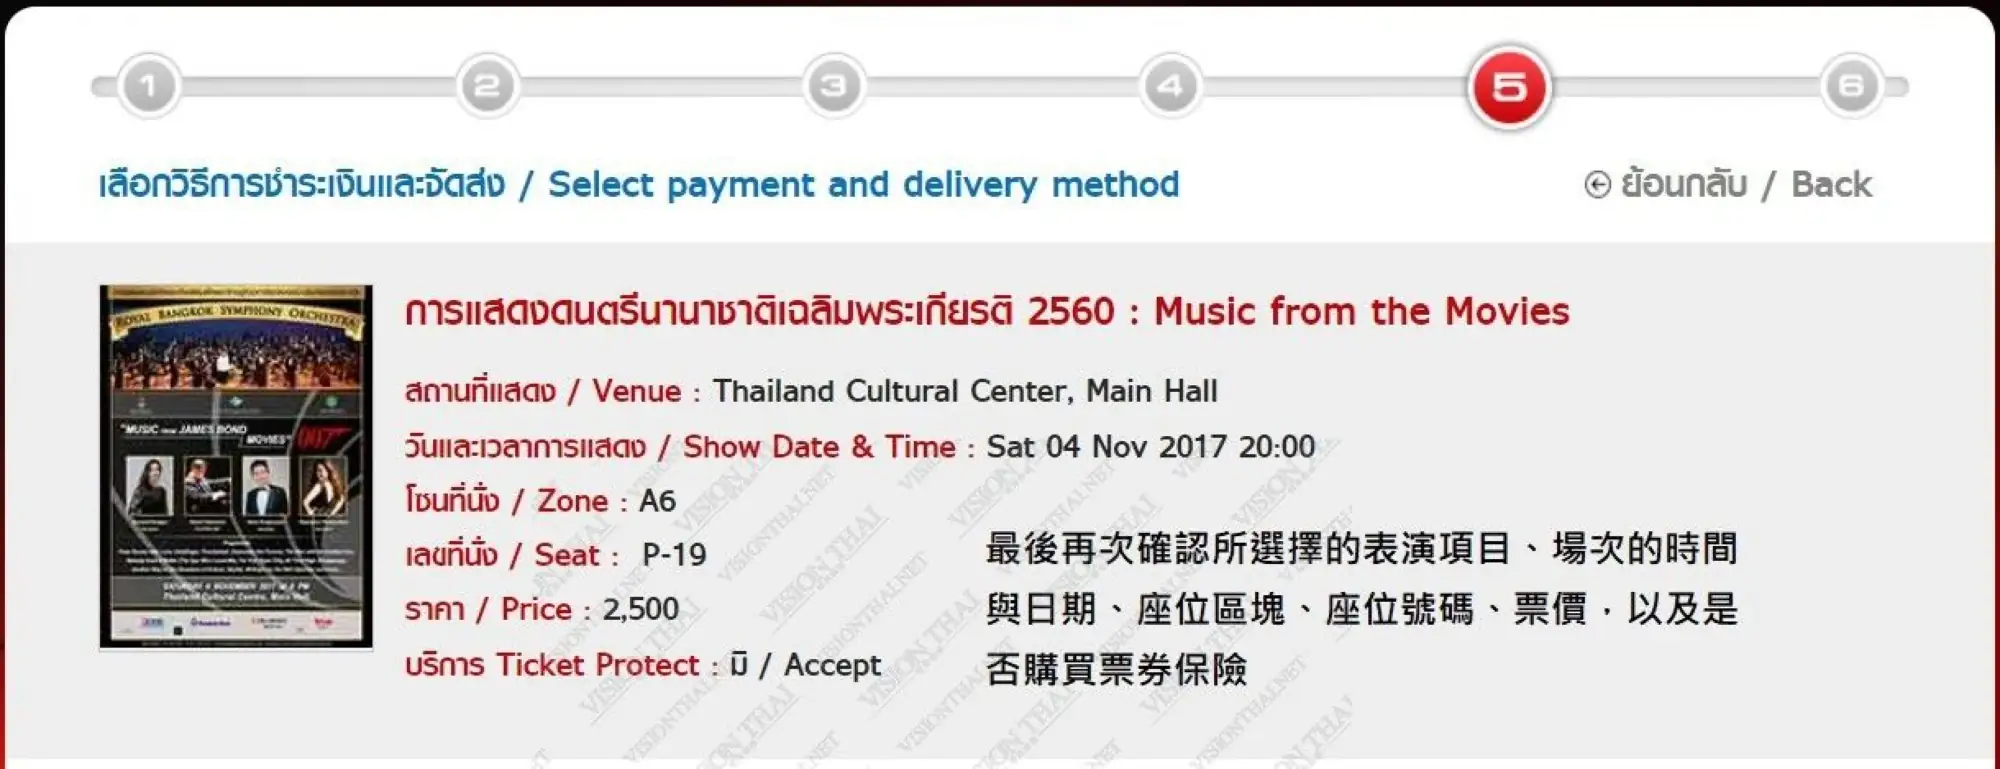 泰國Thai Ticket Major訂票教學2017步驟10 訂單資訊確認